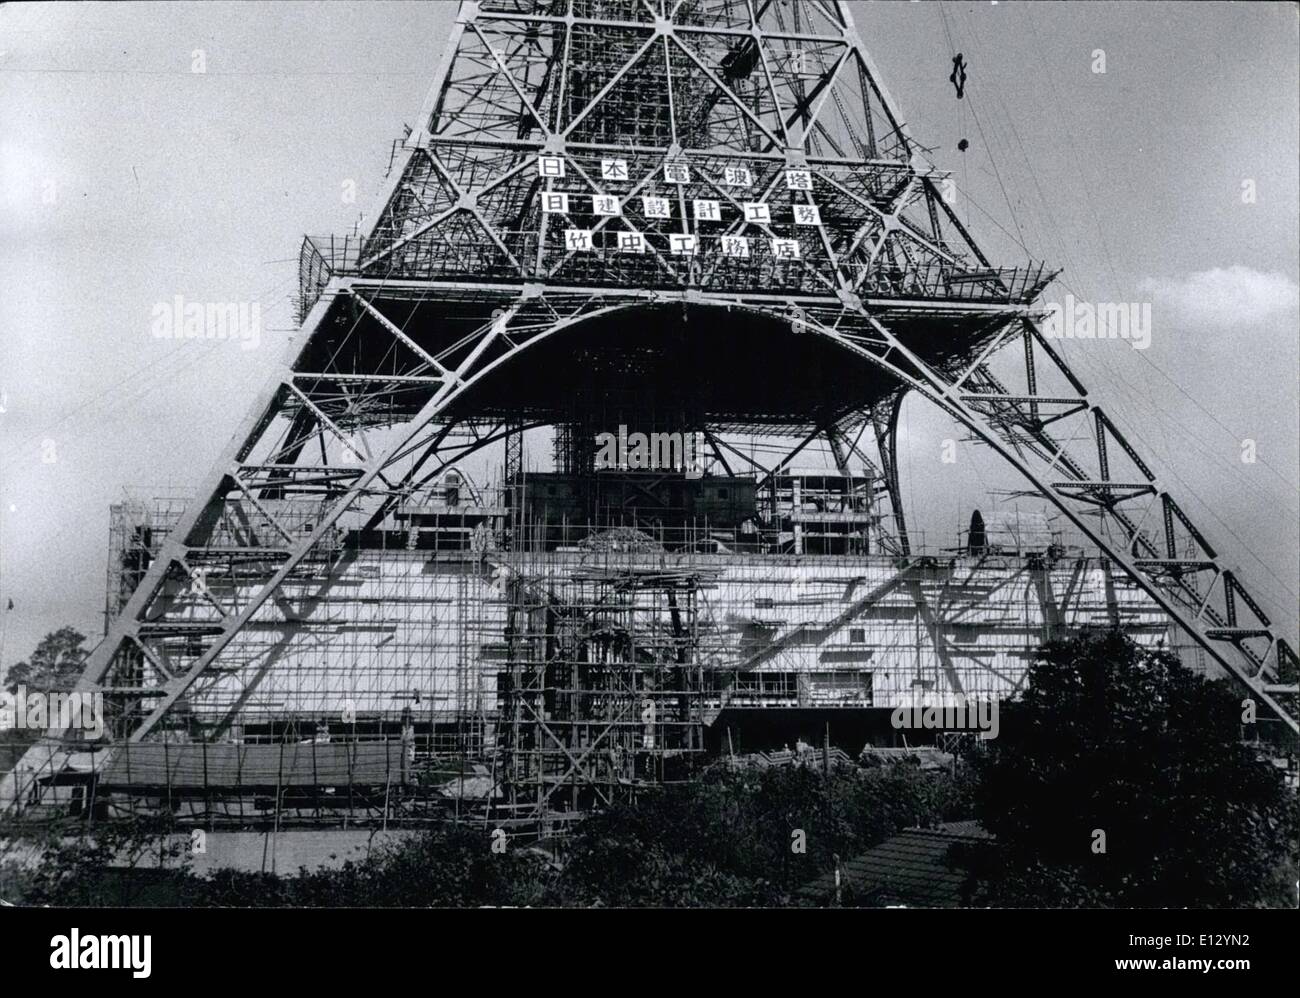 25 février 2012 - Tokyo;s ''Tour Eiffel'' d'ouvrir en décembre. : Tour de Tokyo, le nom officiel de l'I.082 pied T. C. tour sera officiellement ouverte par le Prince héritier Akihito en décembre. Il est de 40 pieds plus haut que le célèbre monument de Paris. Il sera le quatrième Tokyo T. C. station. Grand T. c. studios et un museumare scientifique étant construit au-dessous de la tour de la région à l'intérieur des quatre pattes de support. Photo montre la tour de Tokyo montrant la 1ère plate-forme, sous laquelle est le T. C. studios et musée des sciences. Banque D'Images